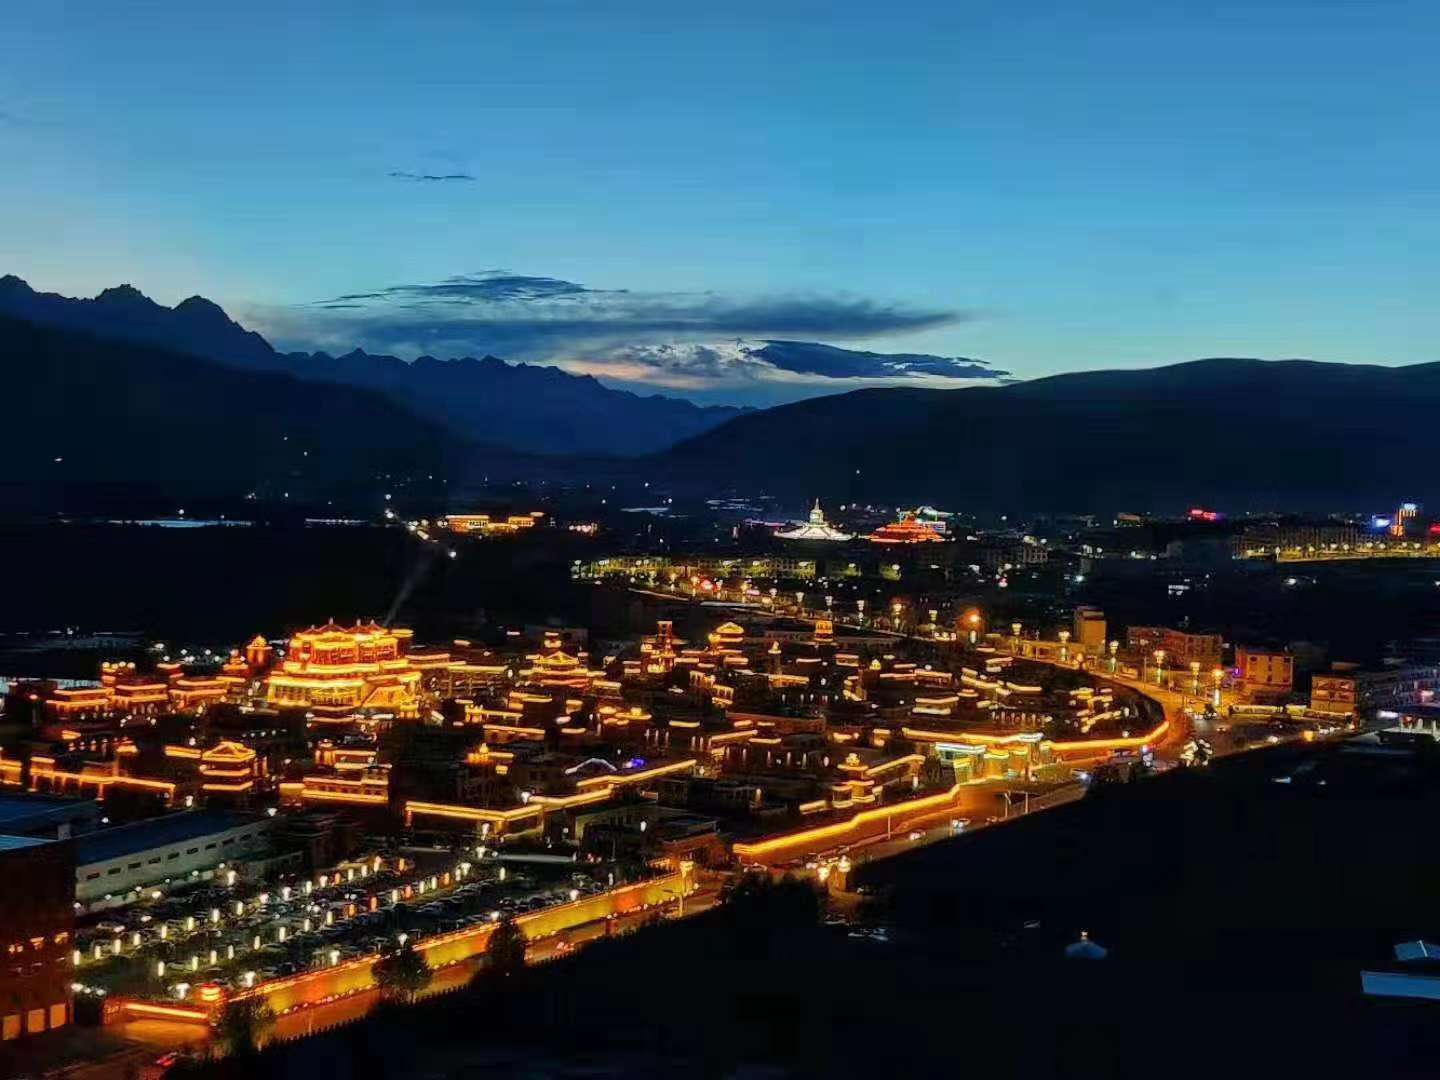 遇见青藏:甘孜县格萨尔王城风韵